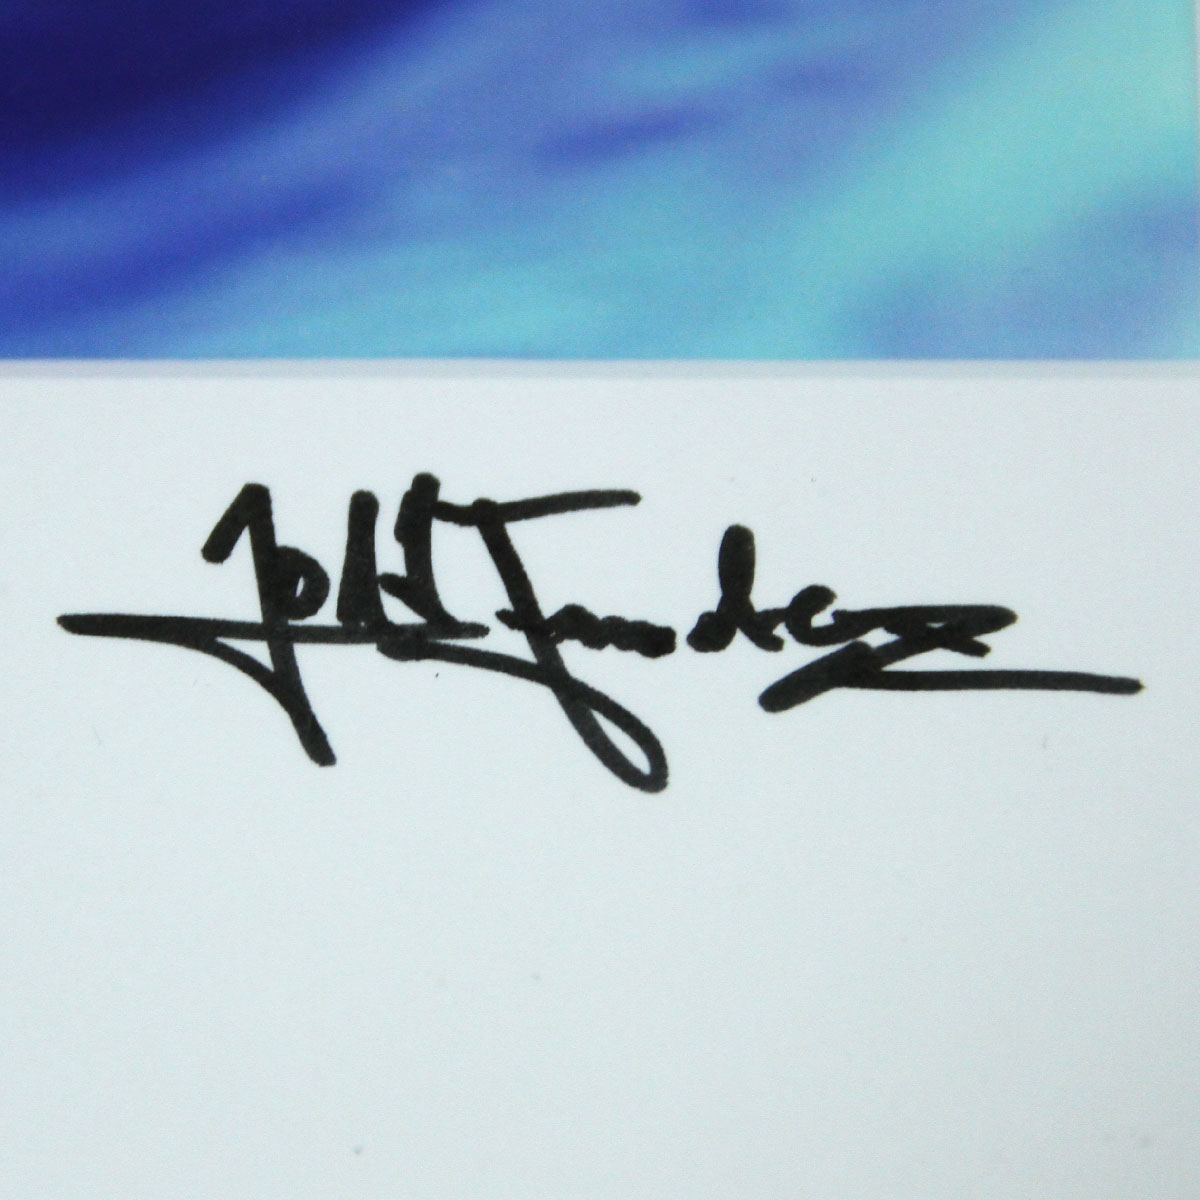 Edition, signierter Kunstdruck von Julio Fernandez: "Spirit of Cable Beach IV"